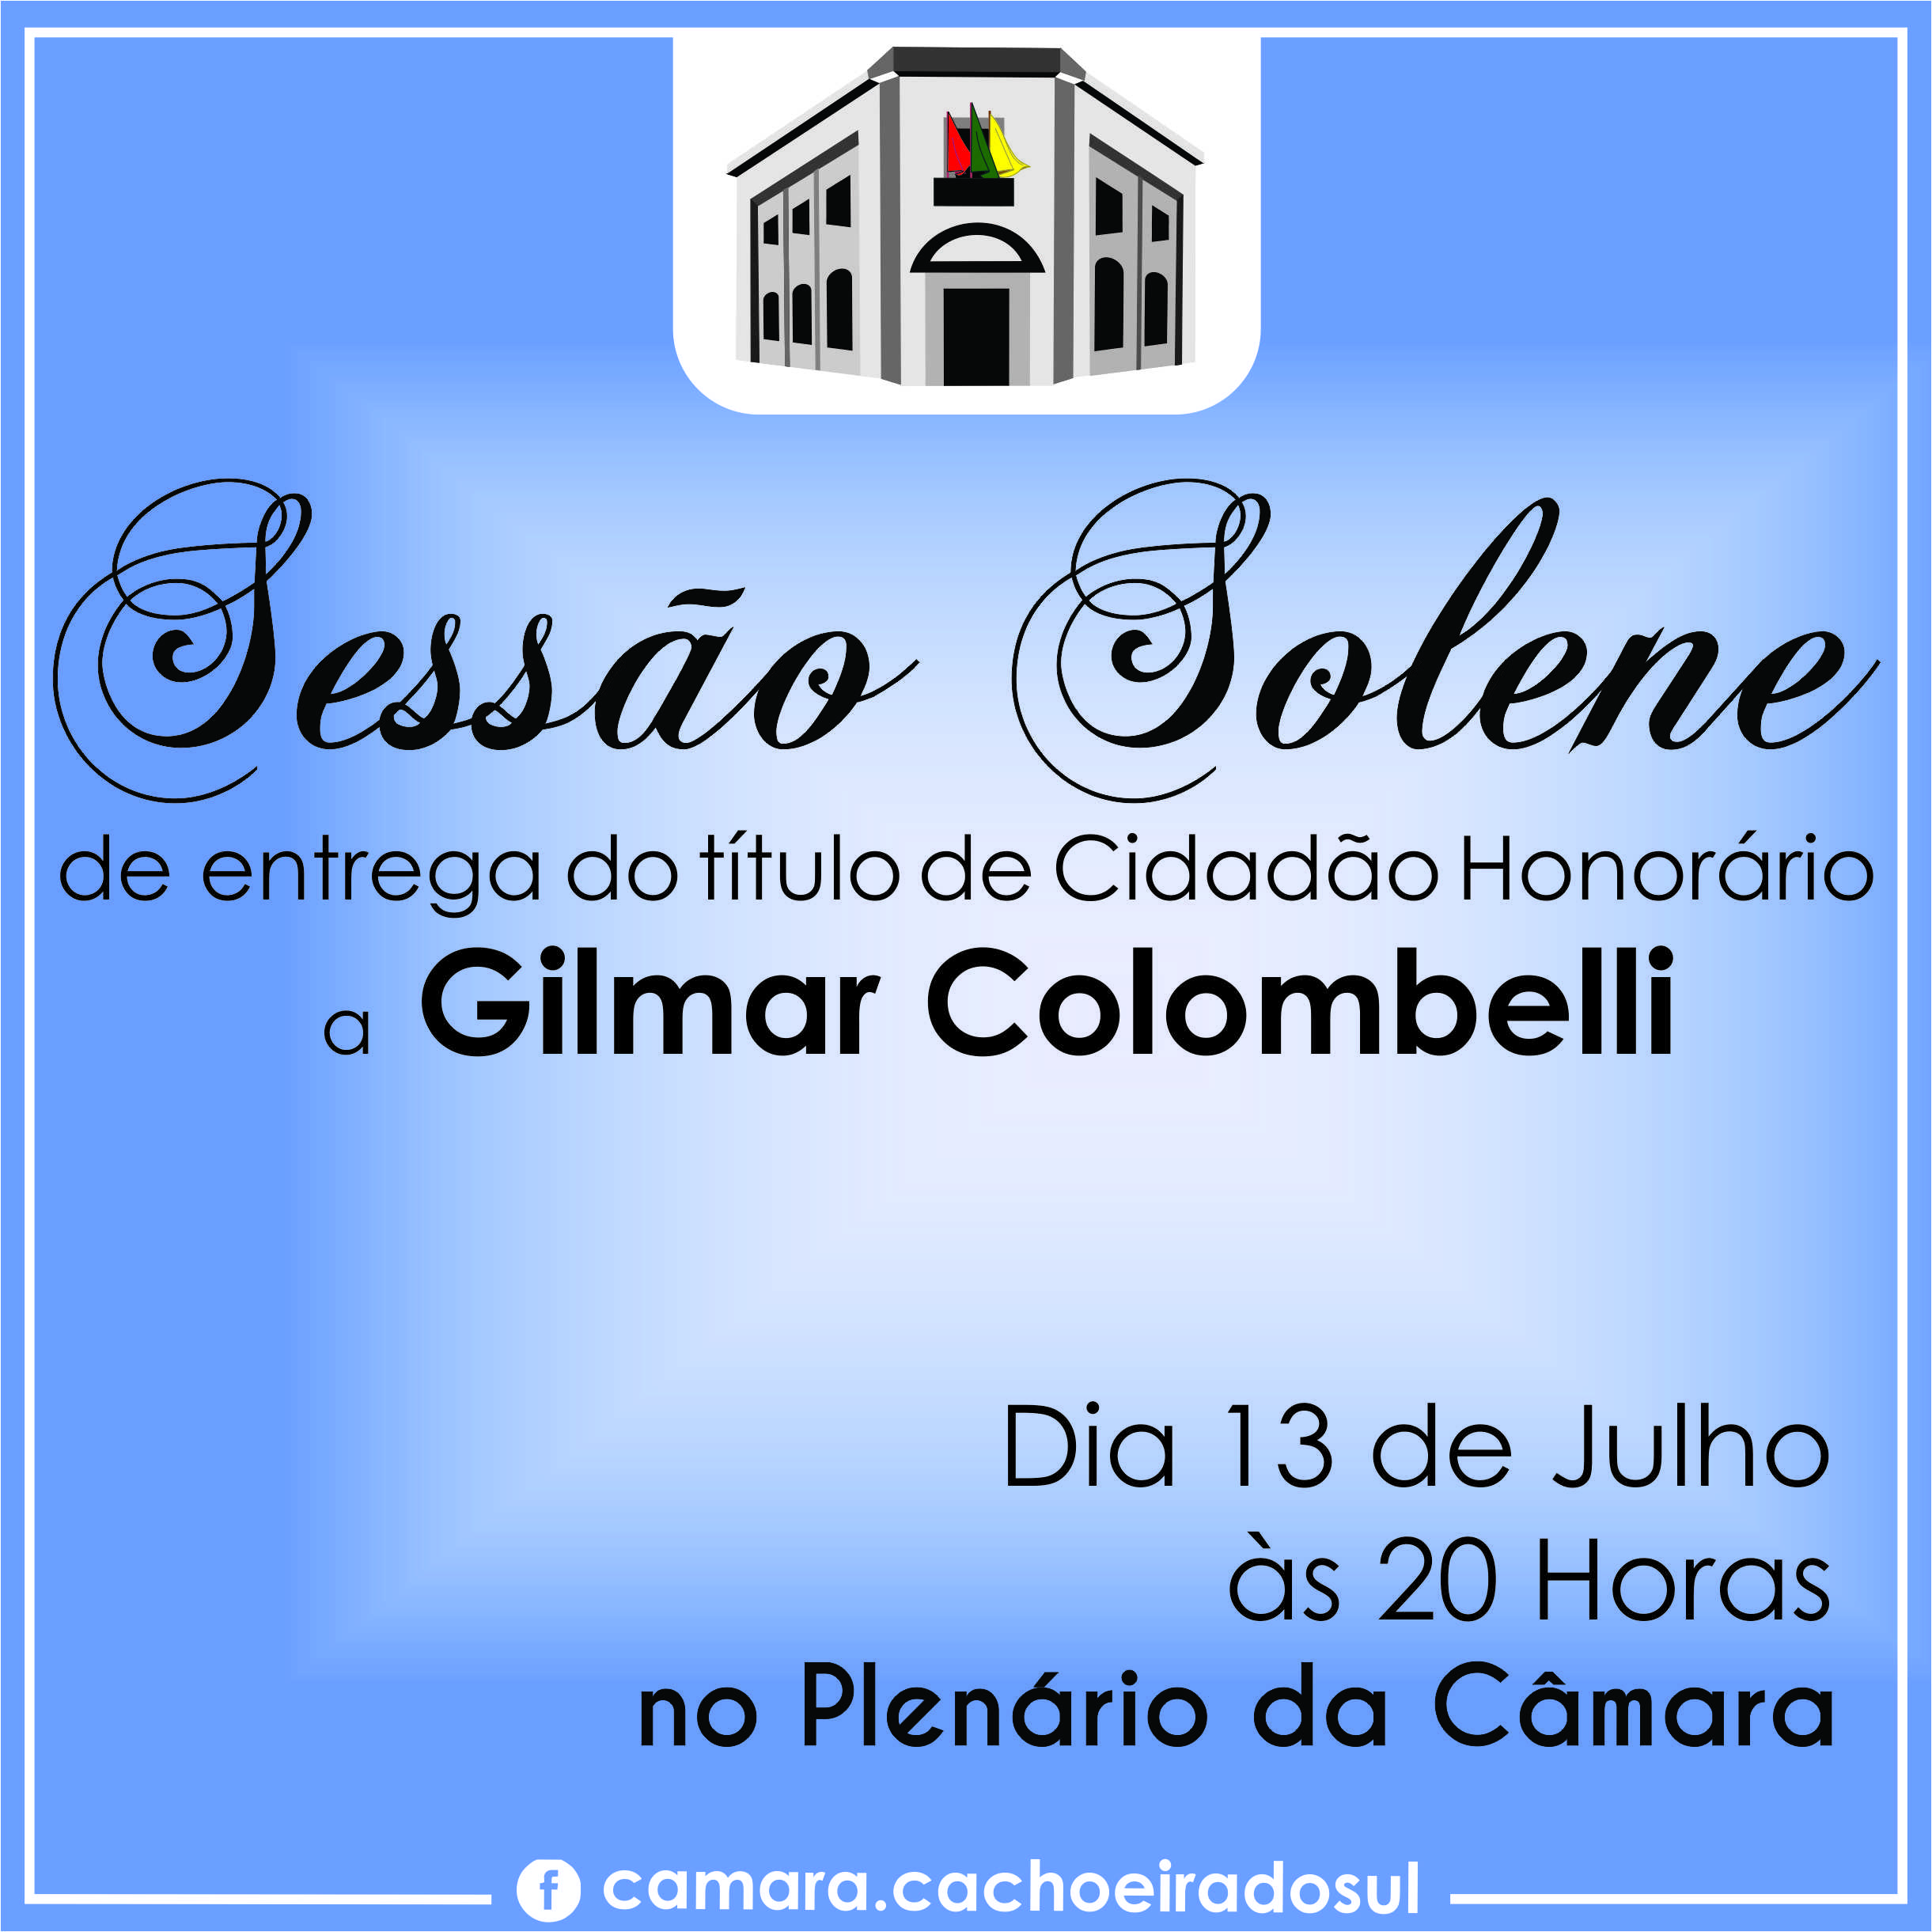 Gilmar Colombelli receberá título cidadão honorário de Cachoeira do Sul